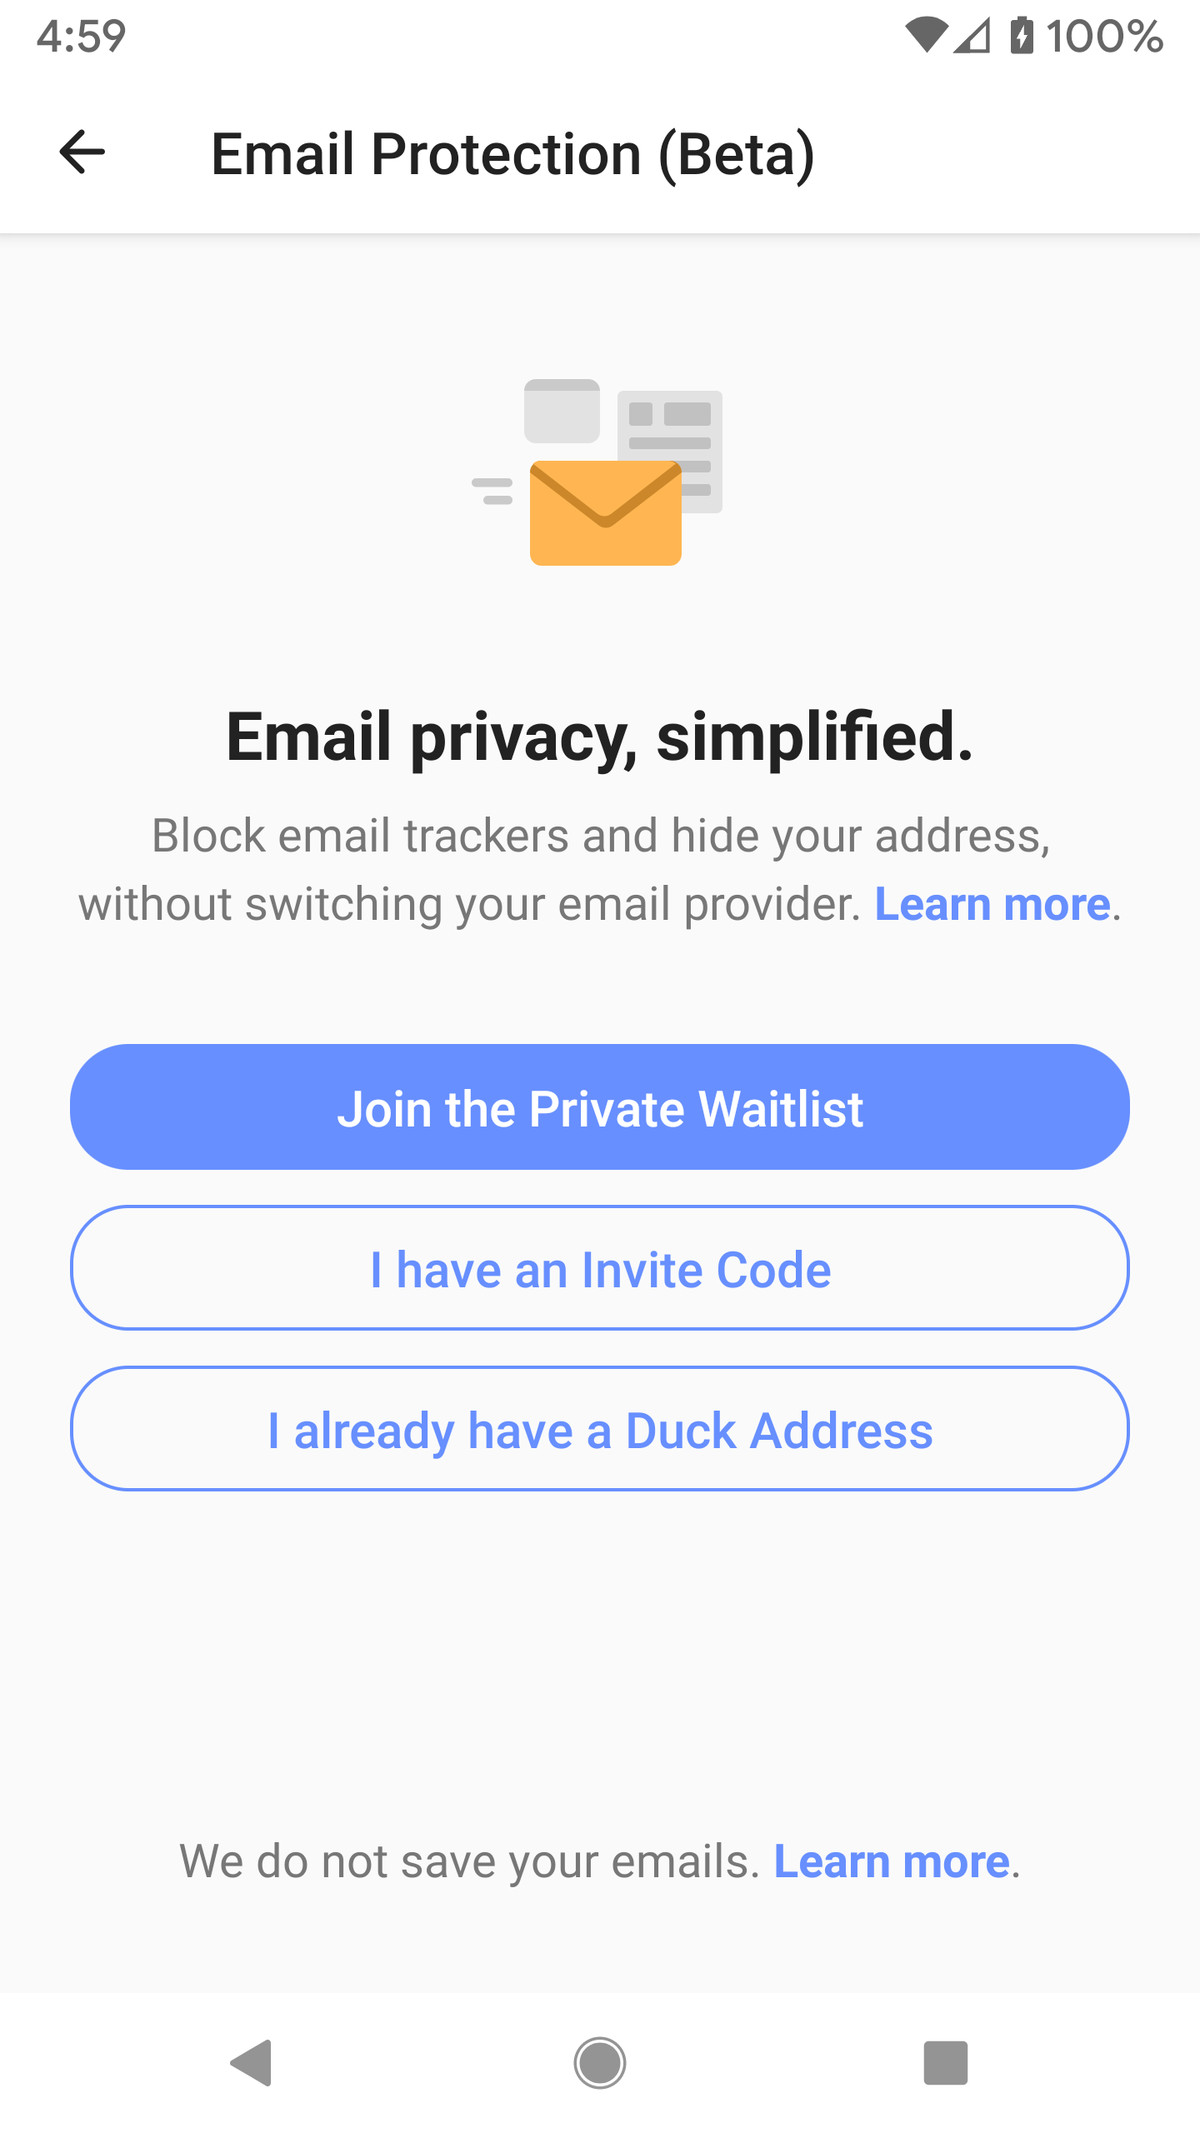 Vă puteți înregistra pentru protecție prin e-mail sau puteți utiliza adresa Duck preînregistrată.